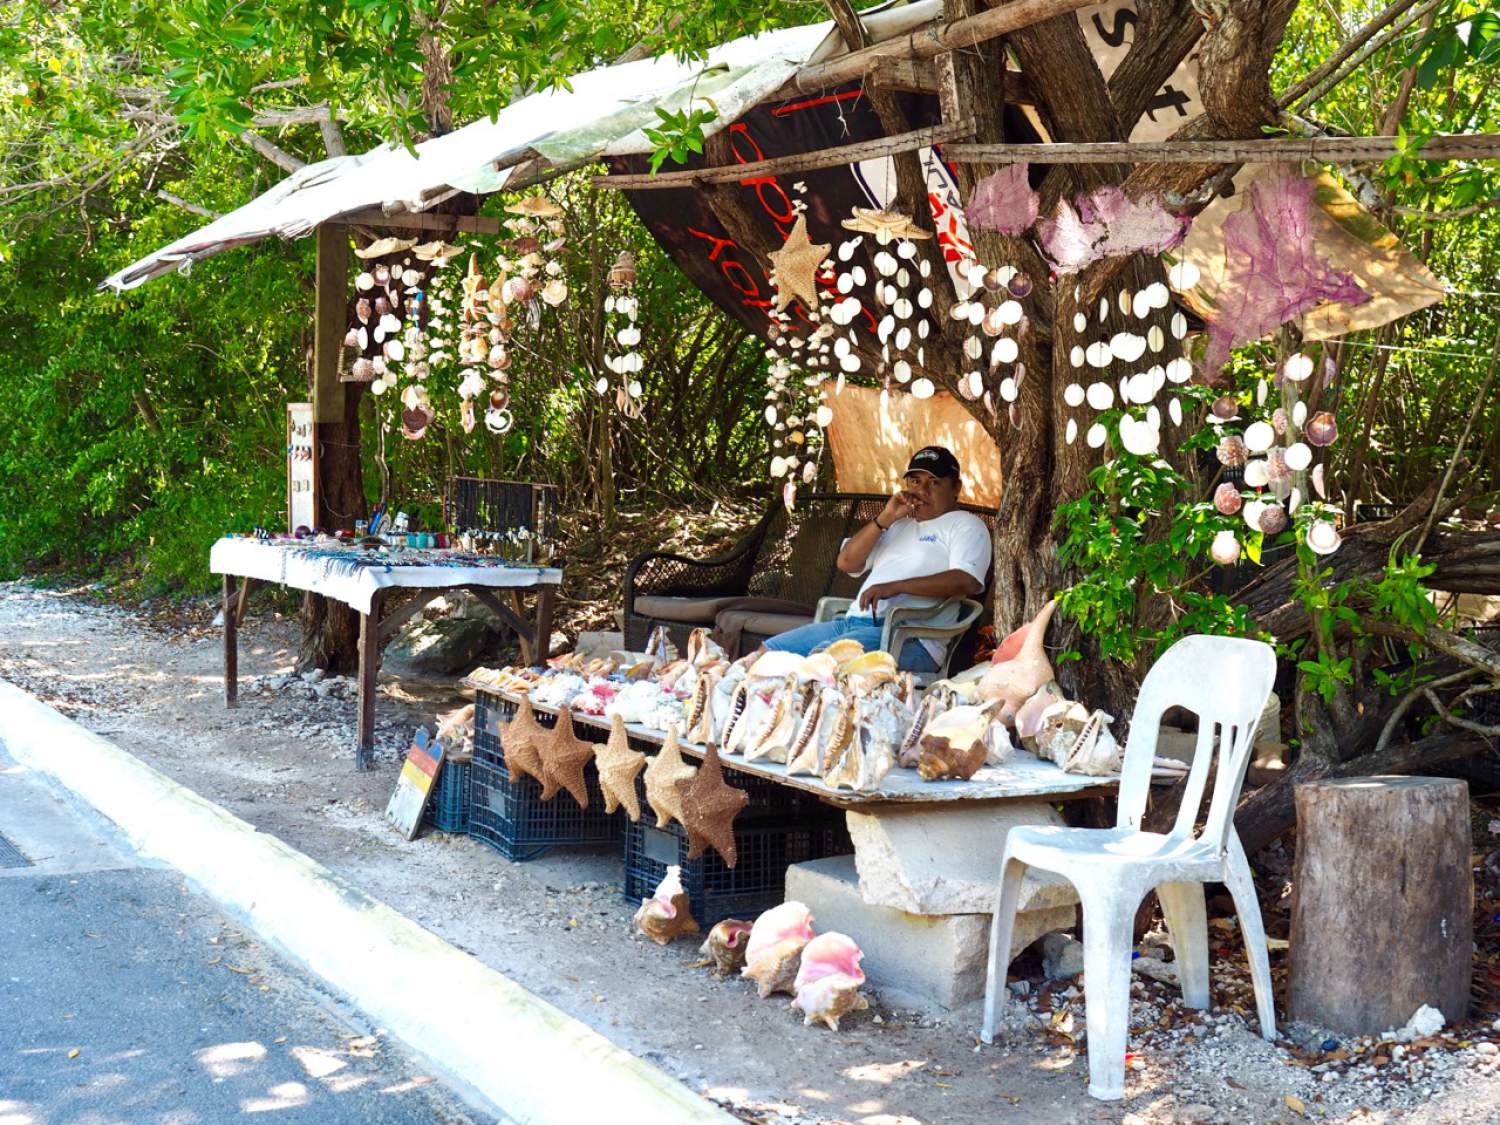 Boutique de coquillages sur Avenida Rueda Medina, Isla Mujeres